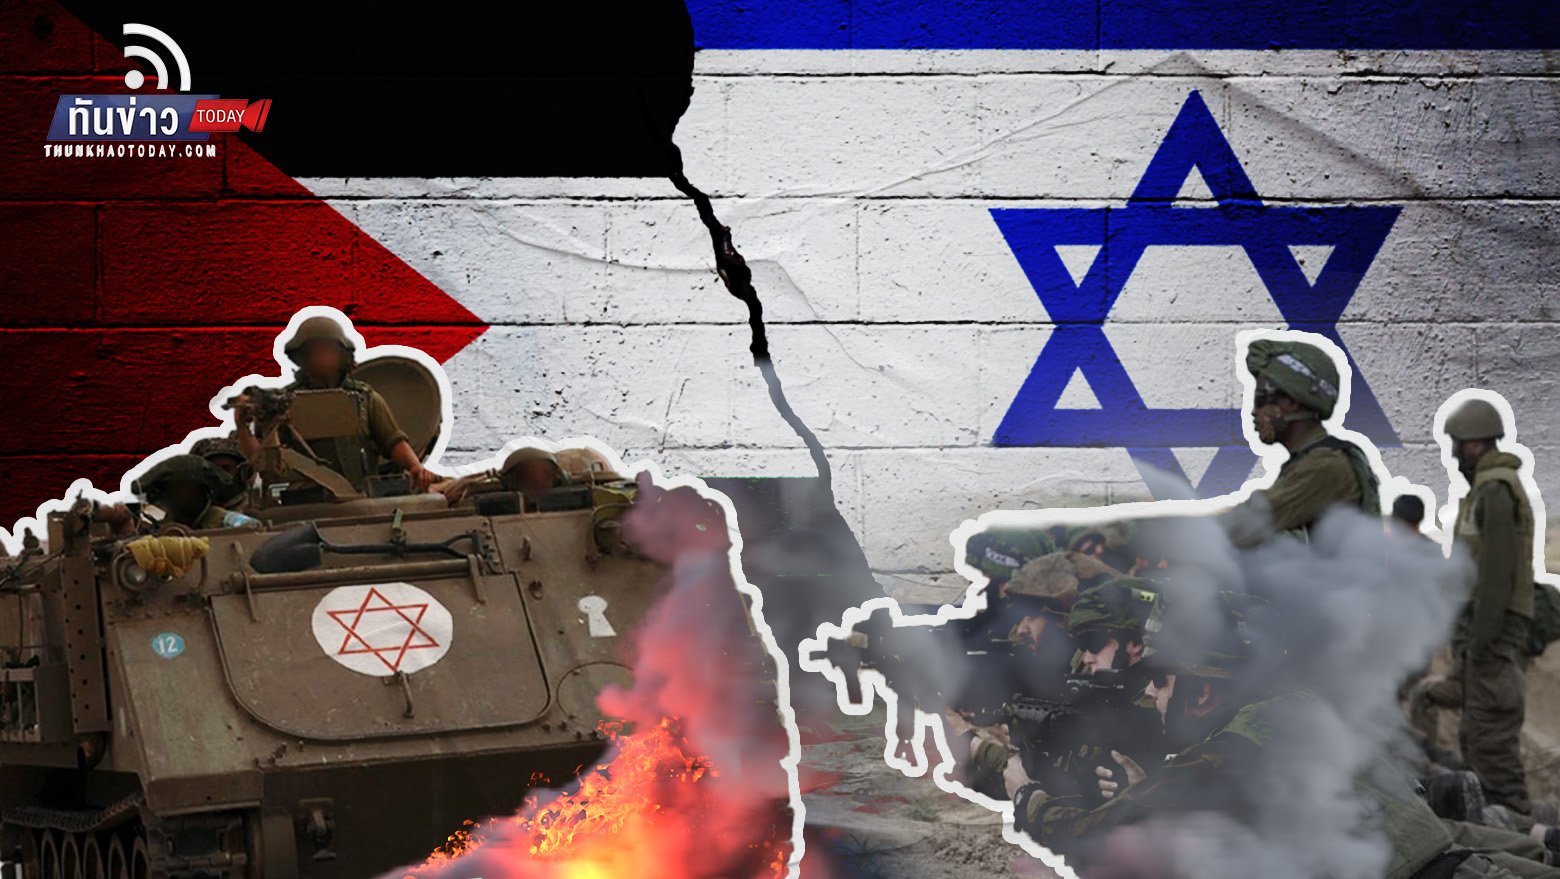 สงครามระหว่างอิสราเอล - ฮามาสยังดุเดือด แม้ปล่อยตัวประกันเพิ่ม